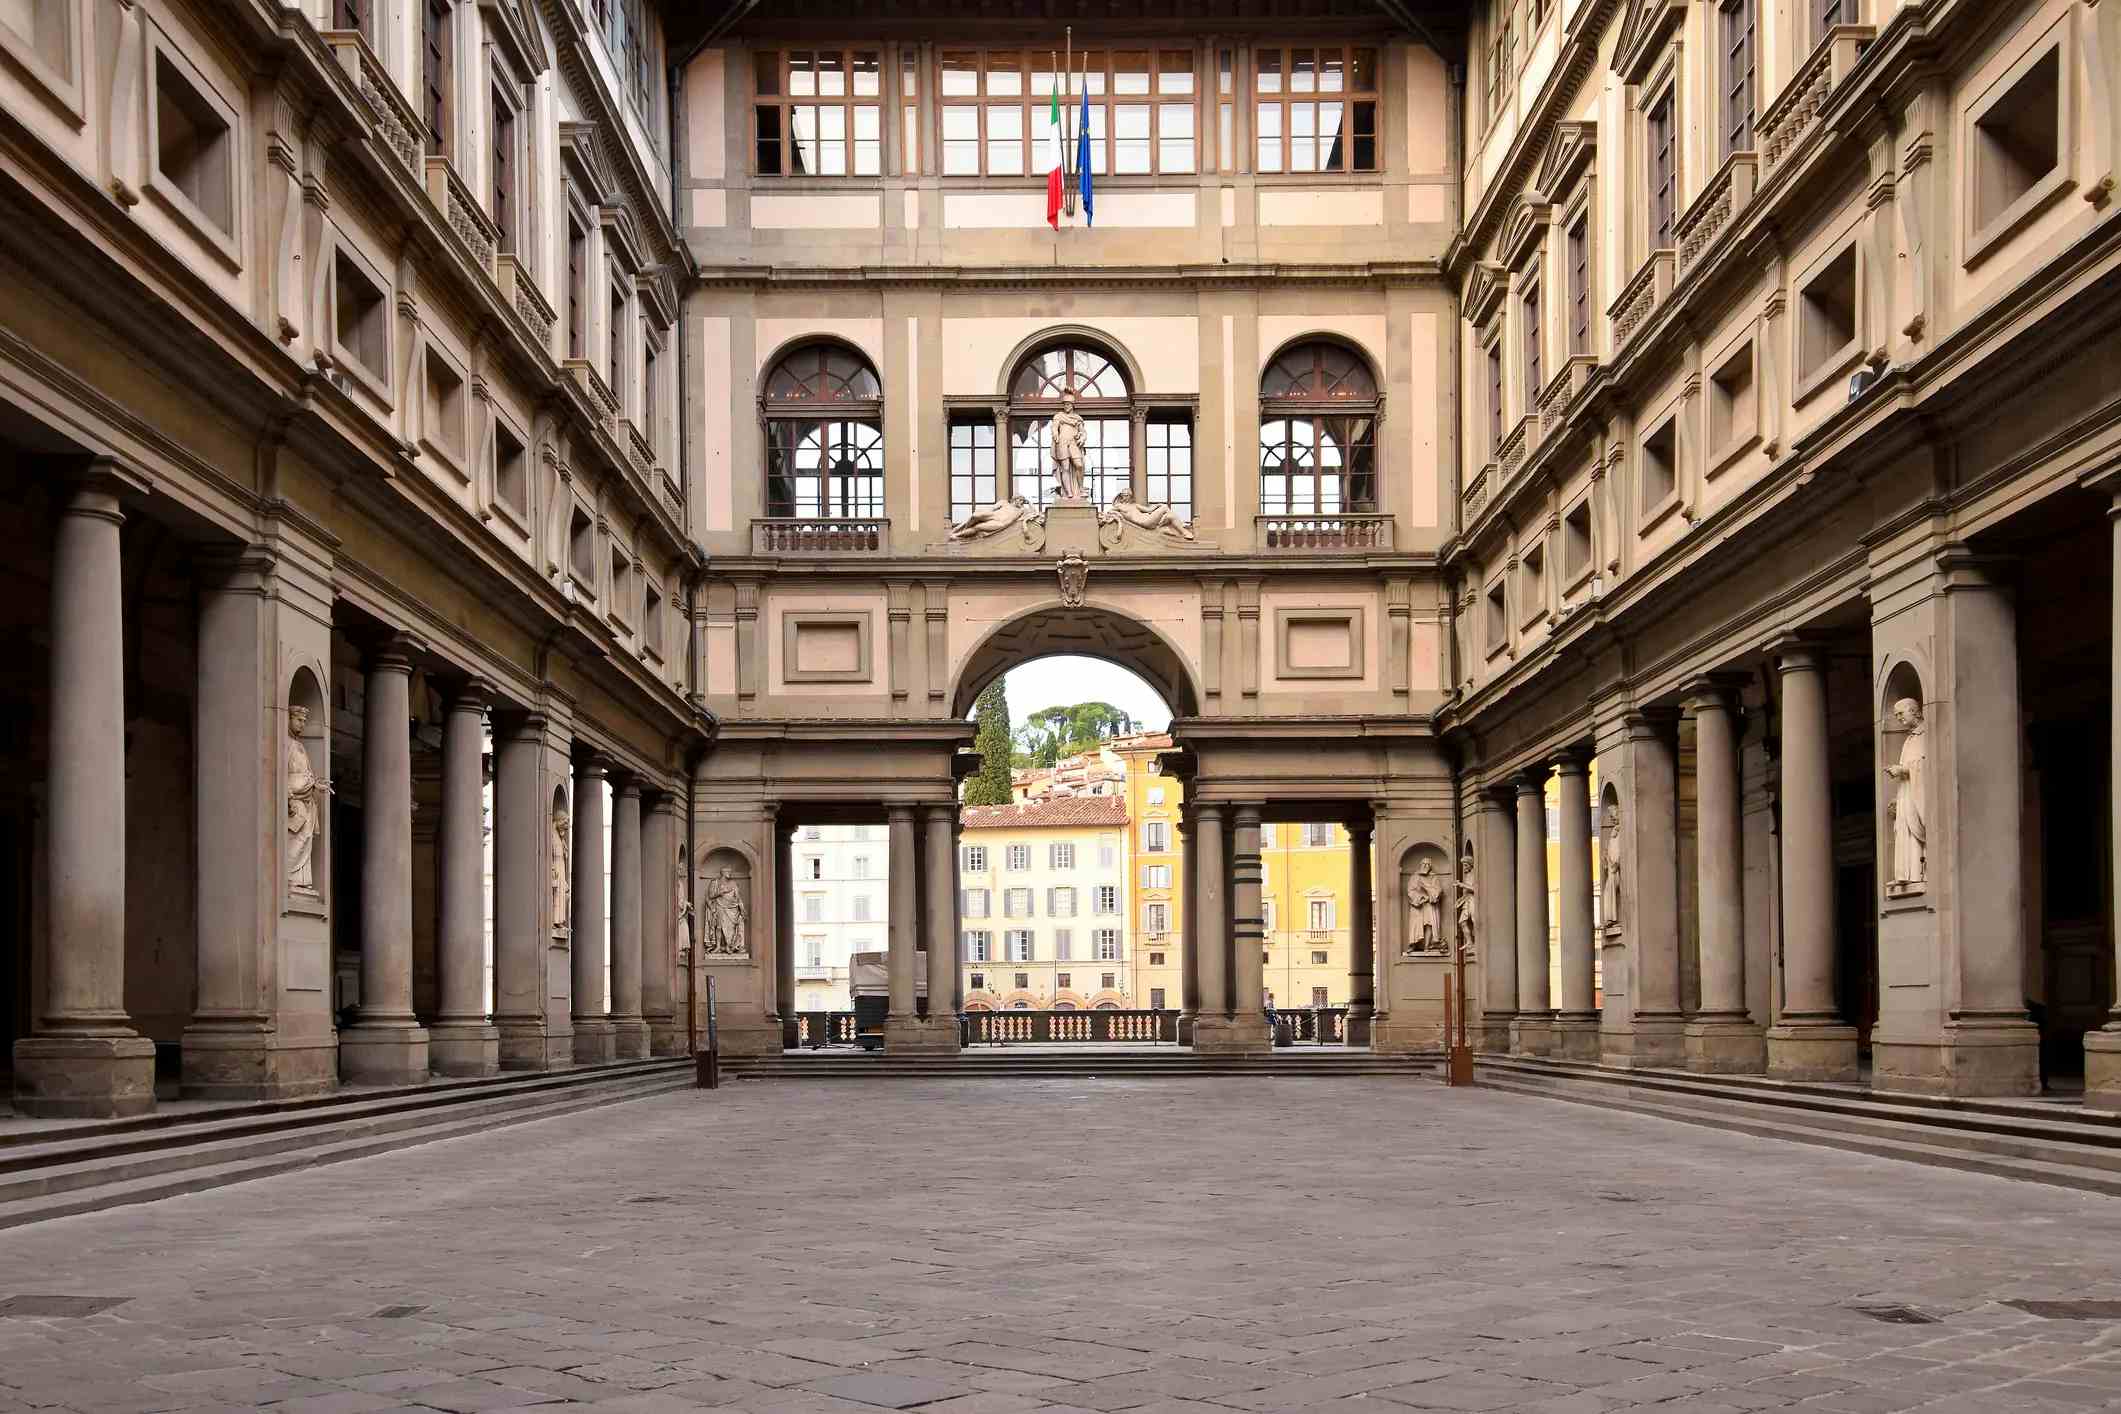 Galeria degli Uffizi image